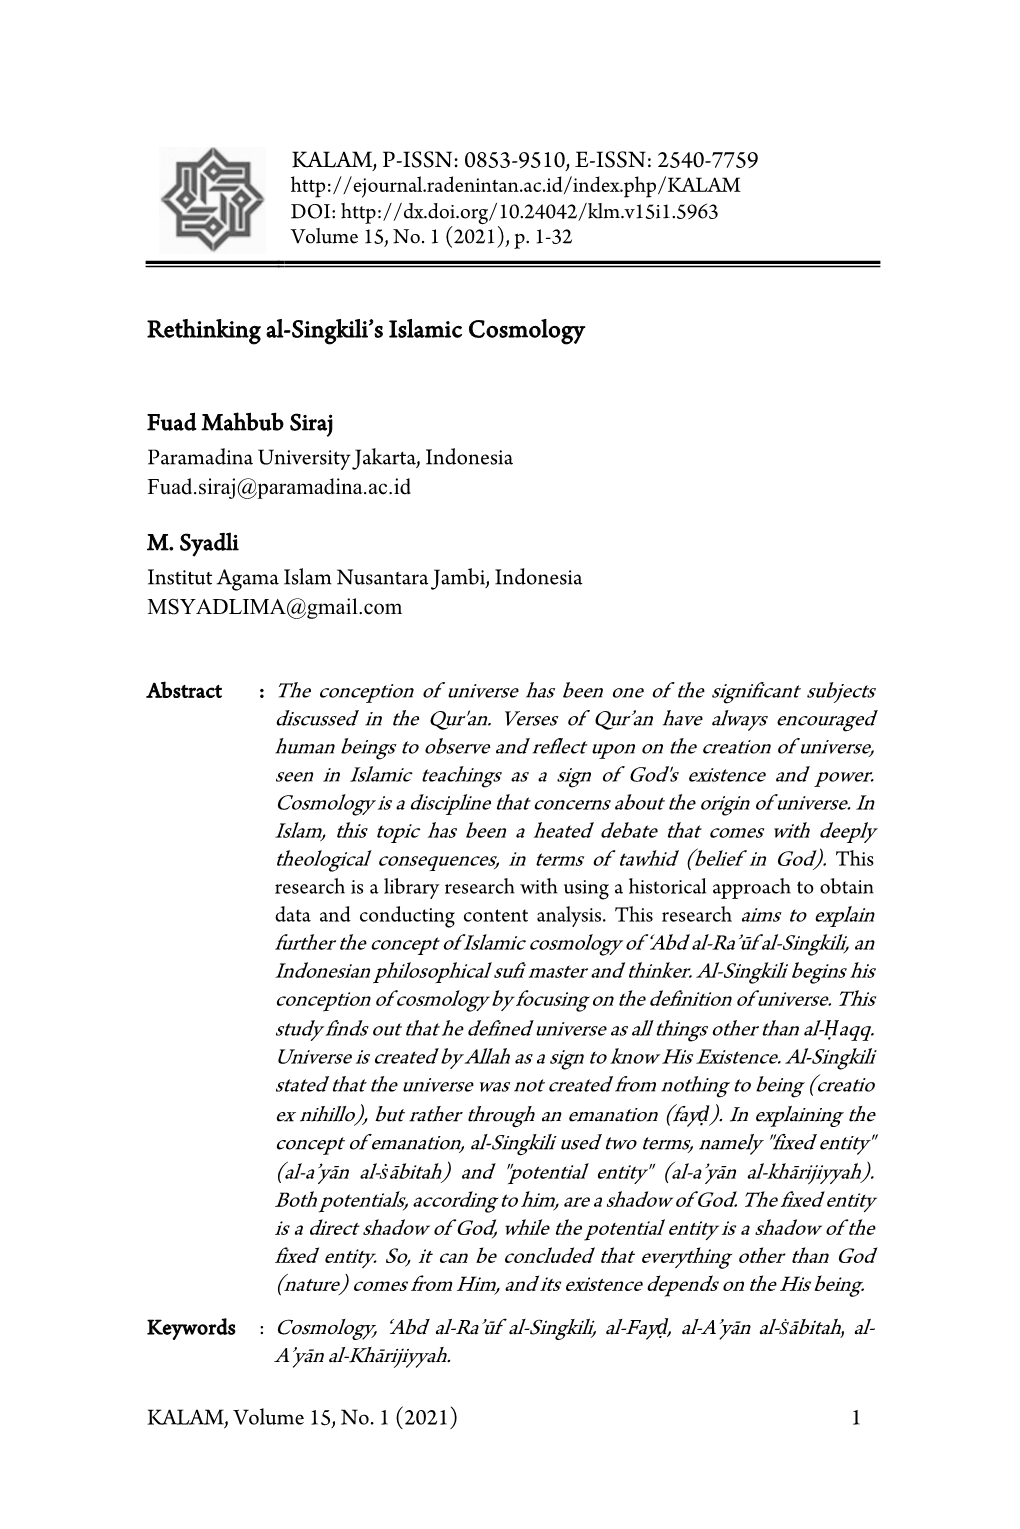 Rethinking Al-Singkili's Islamic Cosmology